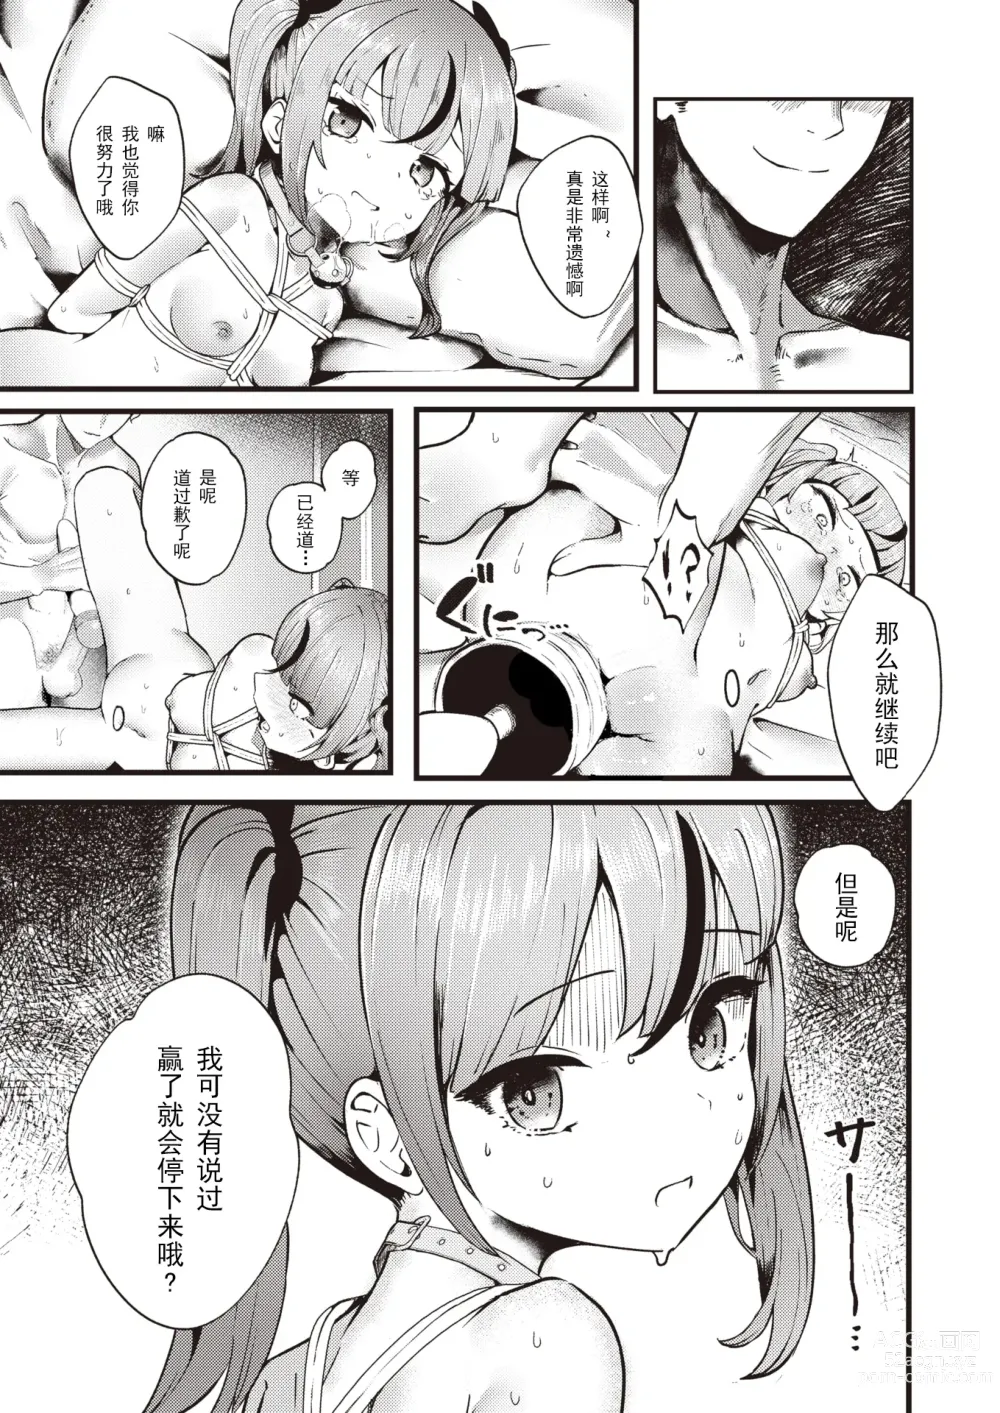 Page 17 of manga 支払いは身体で!